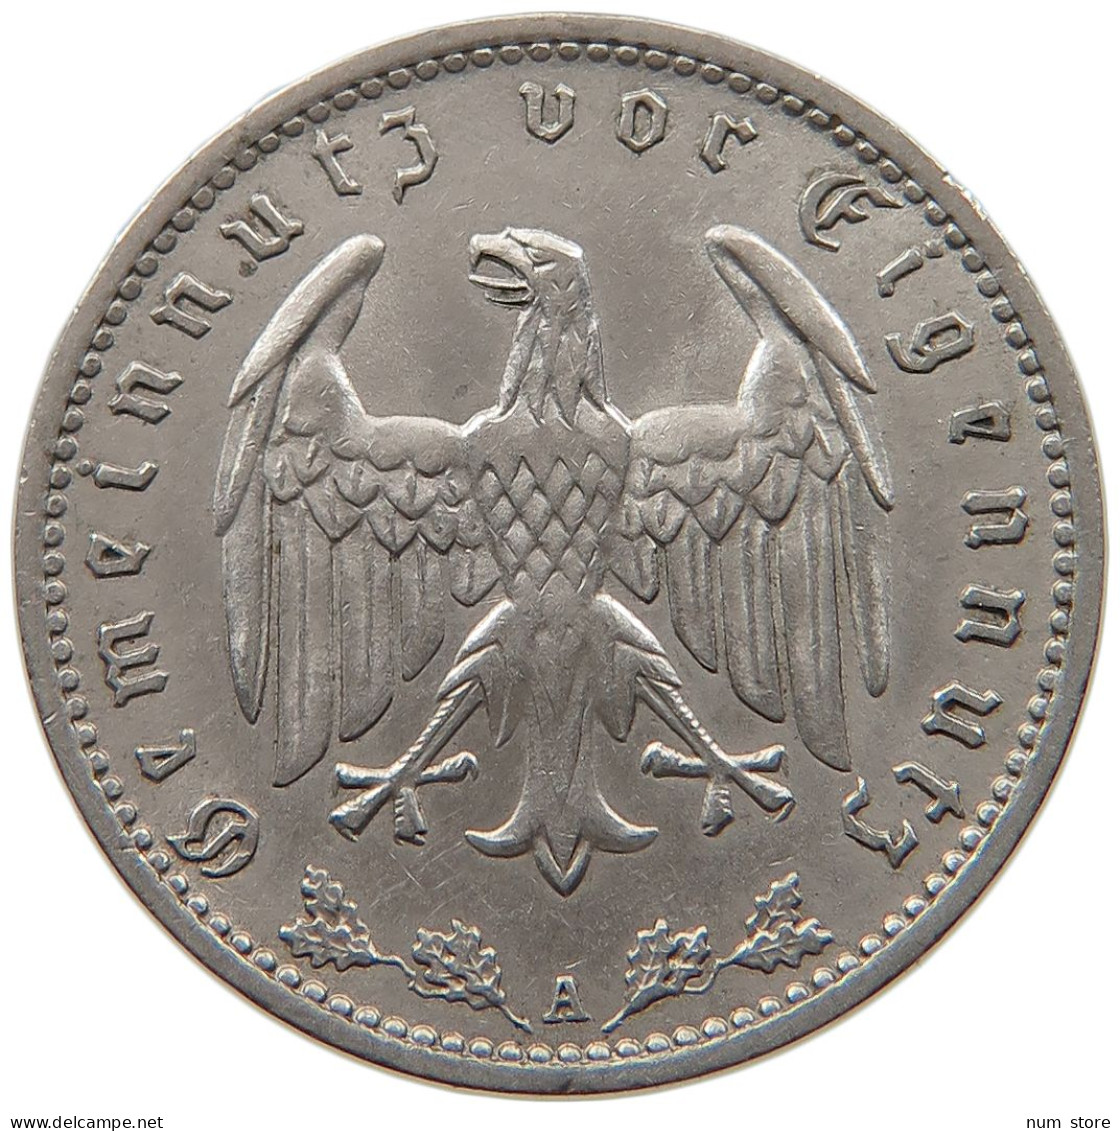 DRITTES REICH MARK 1934 A  #MA 099317 - 1 Reichsmark